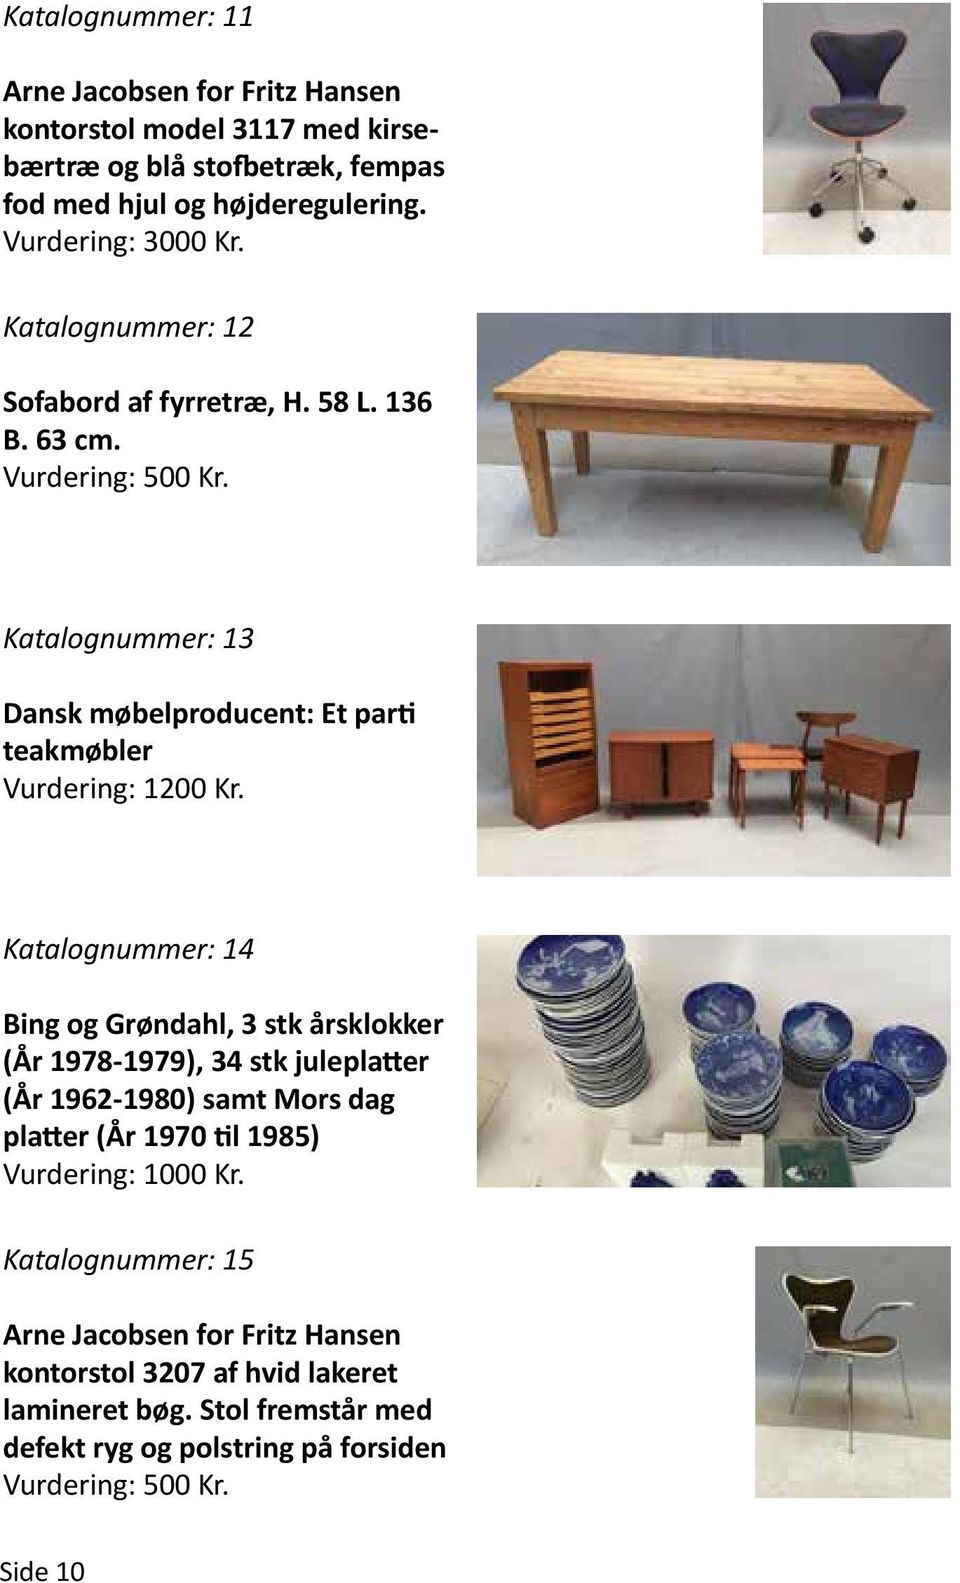 Katalognummer: 13 Dansk møbelproducent: Et parti teakmøbler Vurdering: 1200 Kr.